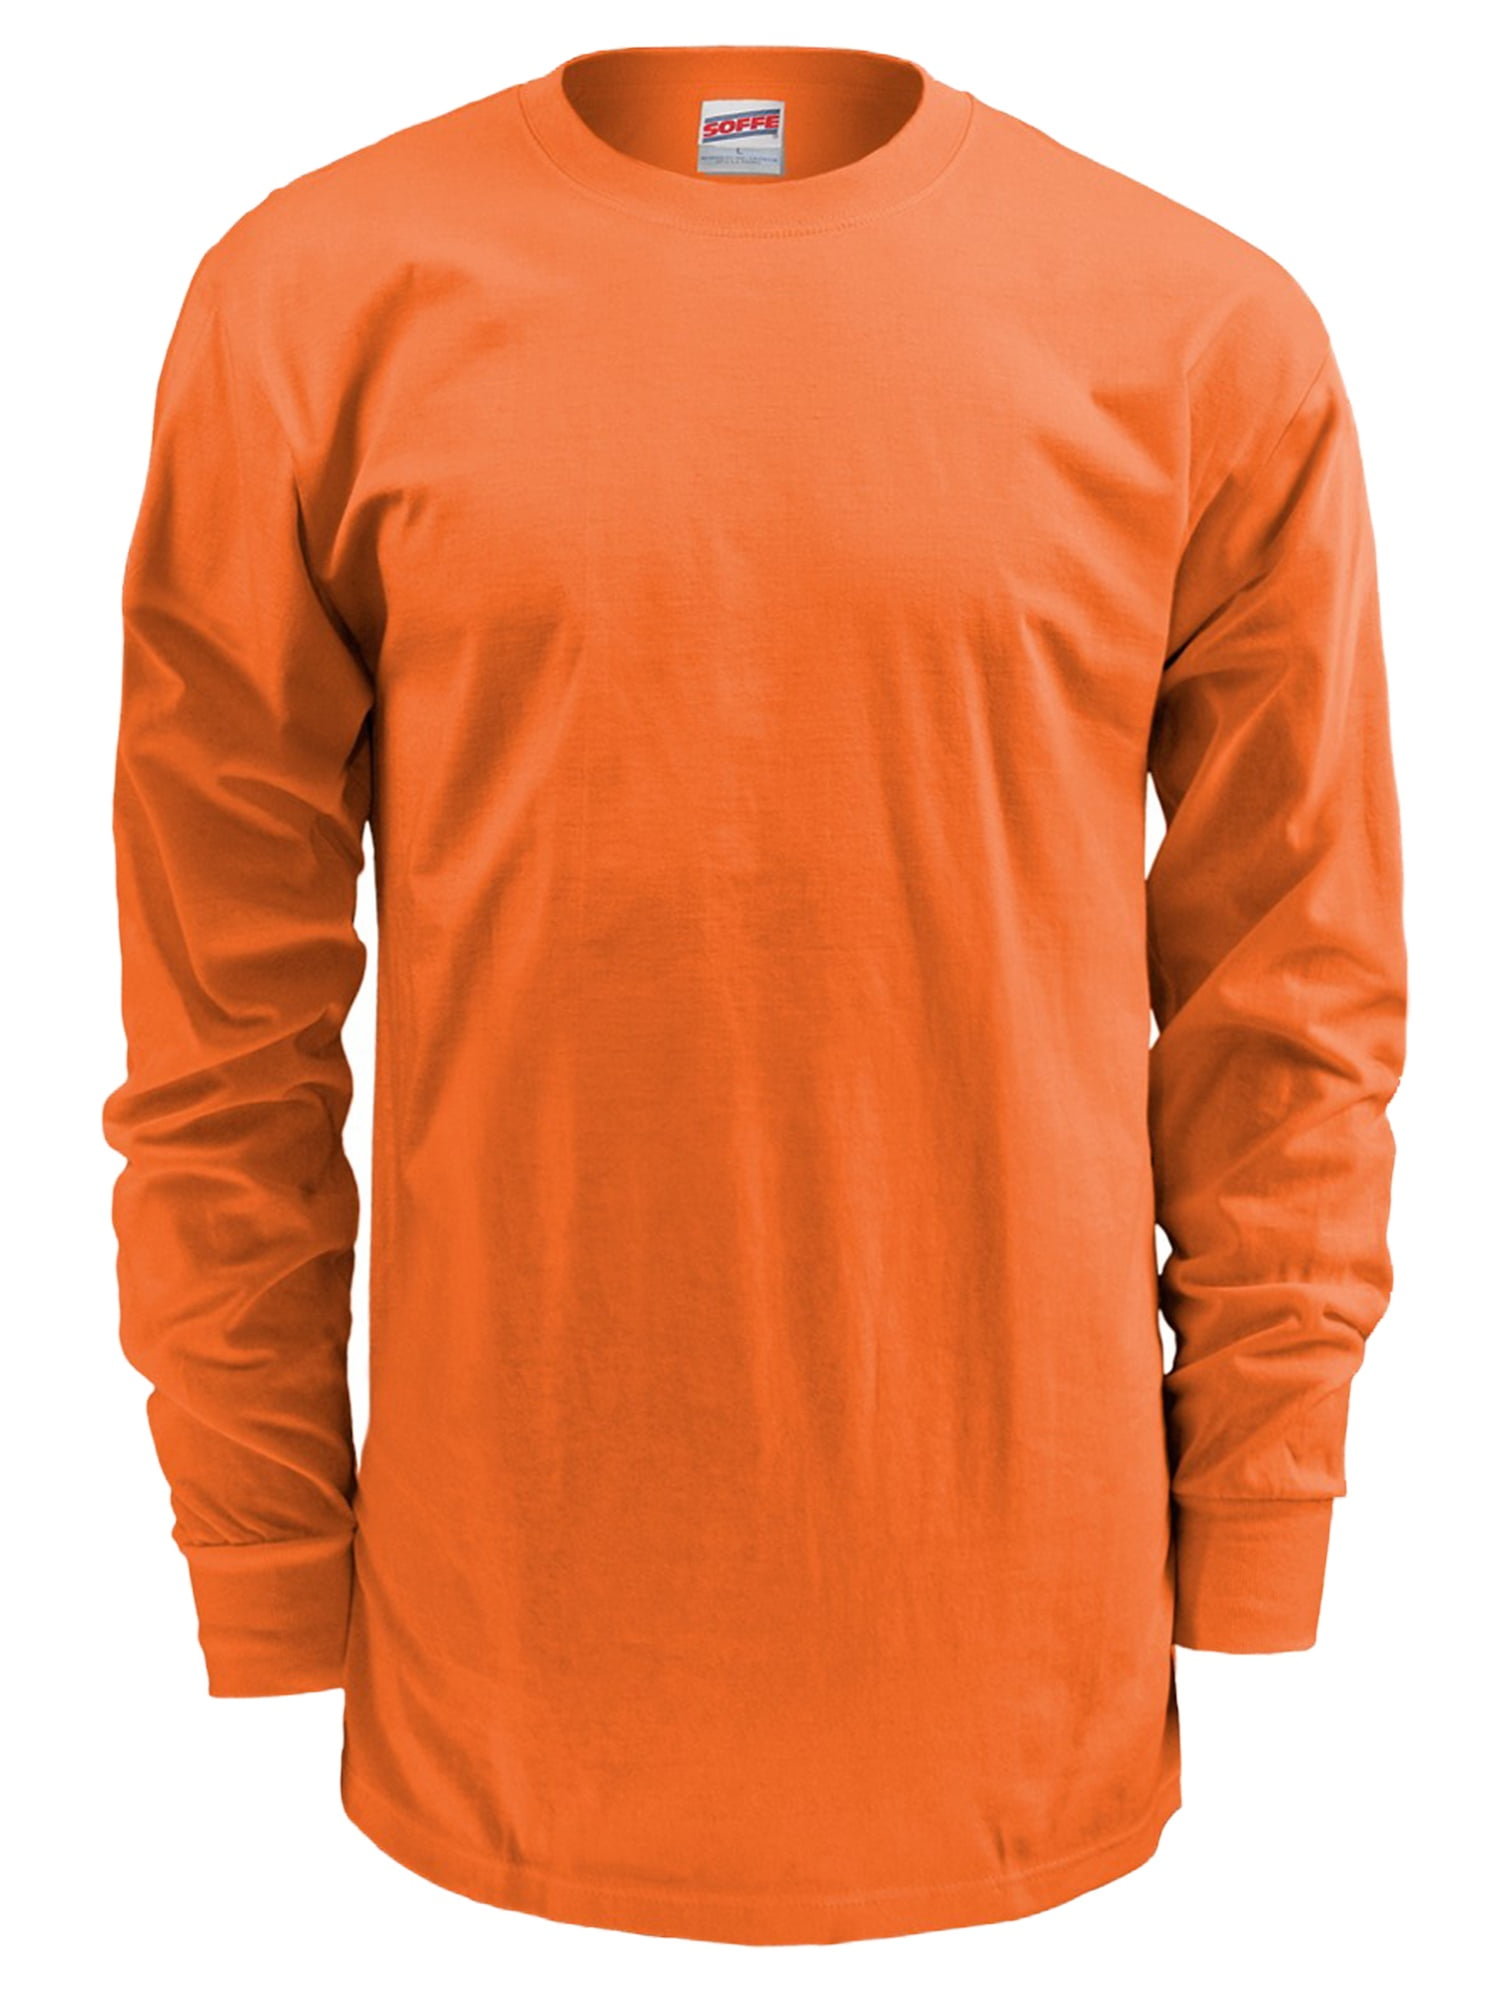 Soffe - Soffe Men's Midweight Cotton Long Sleeve T-Shirt - Walmart.com ...